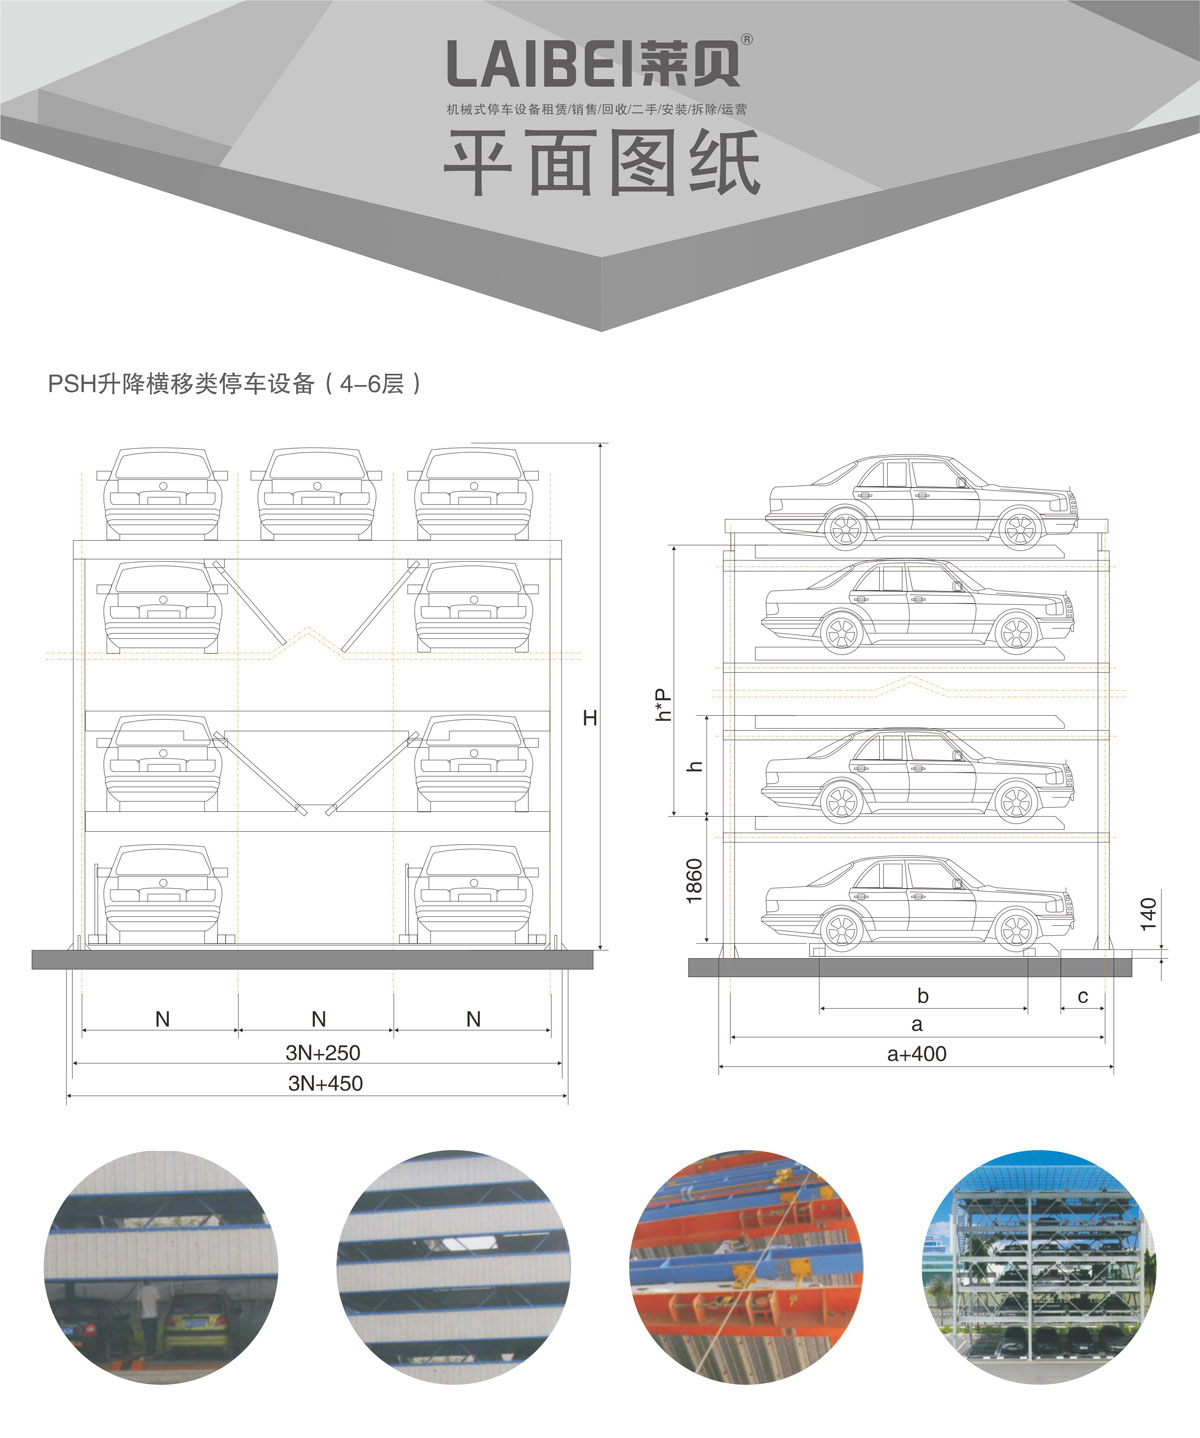 05四至六层PSH4-6升降横移机械式停车设备平面图纸.jpg